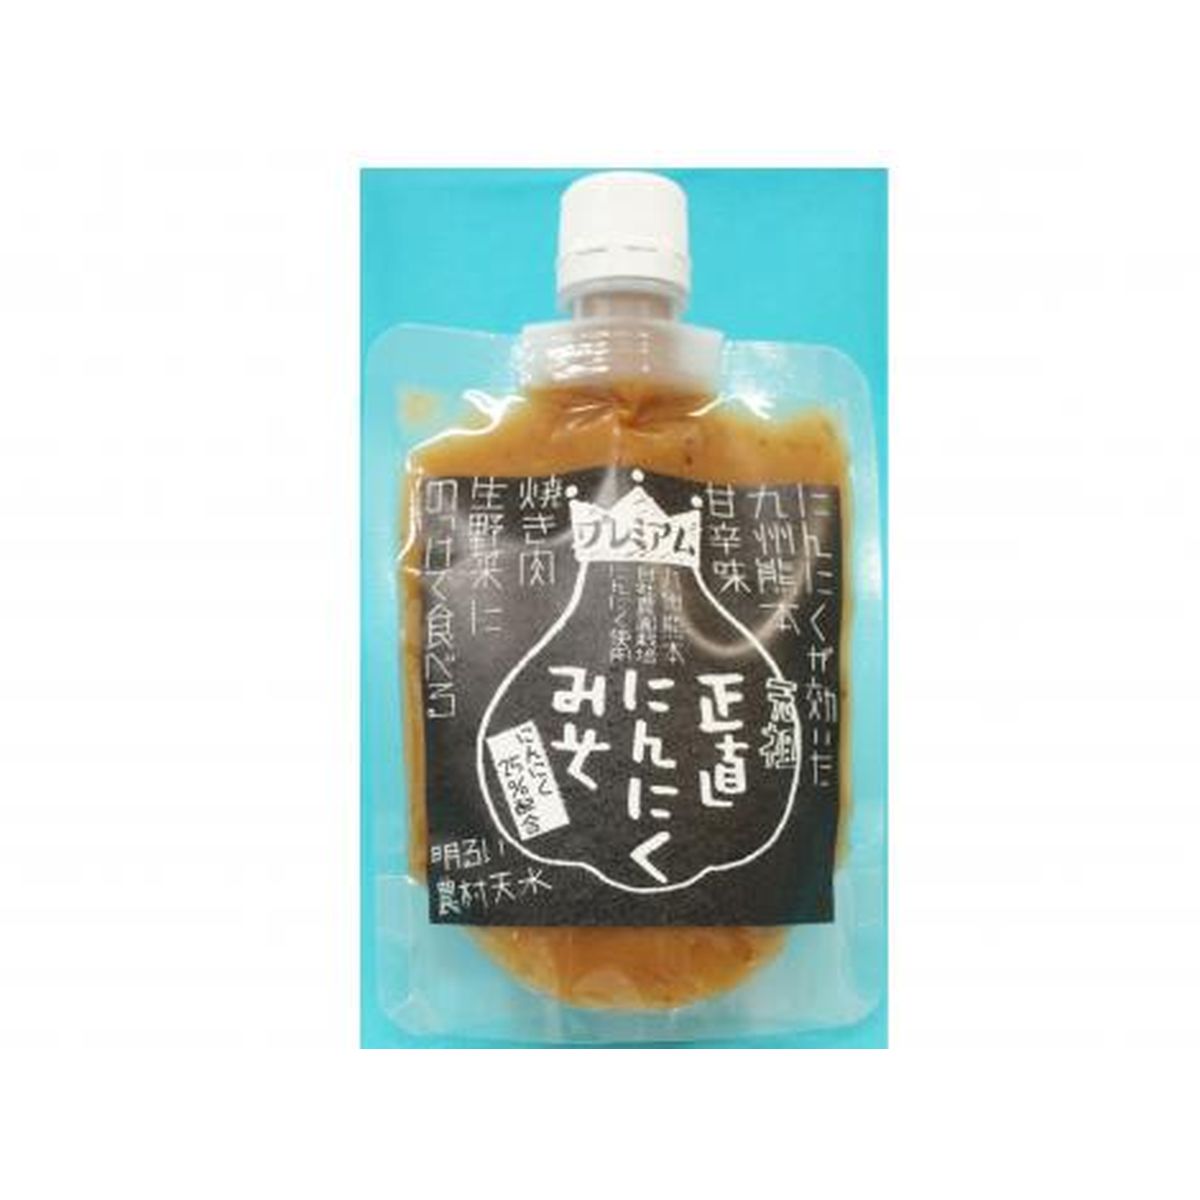 【送料無料 + 33】明るい農村天水 熊本県産にんにく使用 にんにく味噌2種5個セット